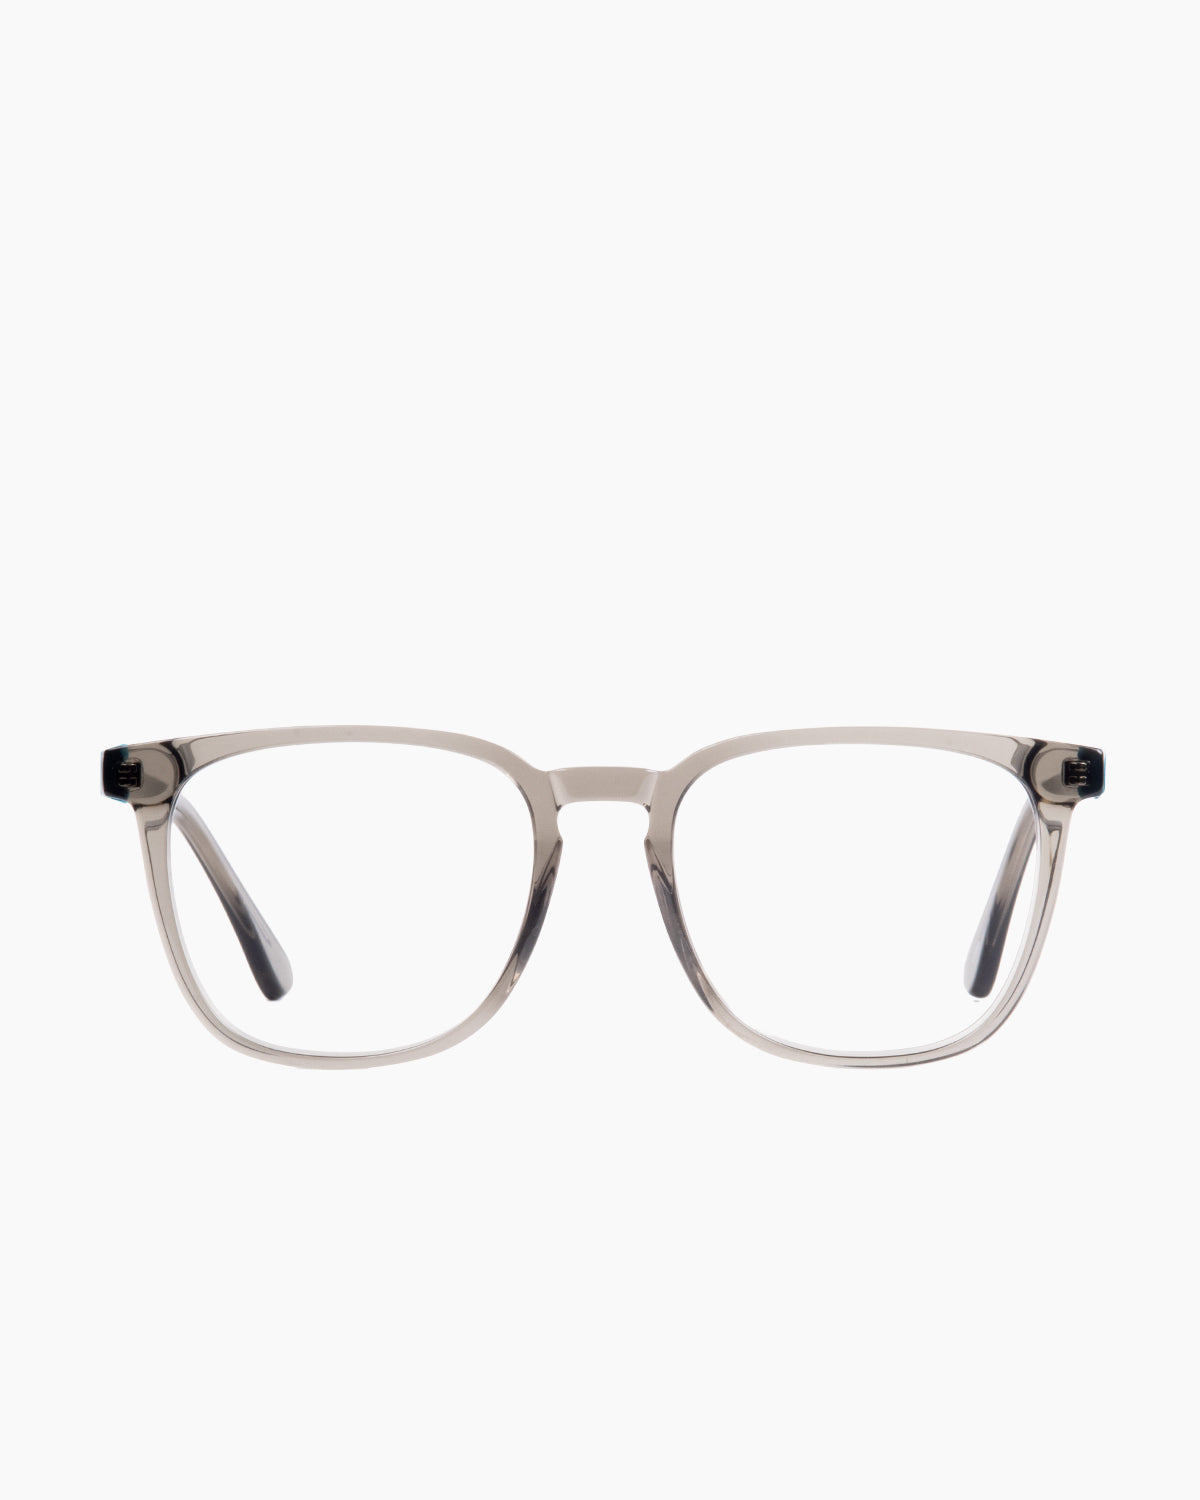 Evolve - Rob - 13 | glasses bar:  Marie-Sophie Dion